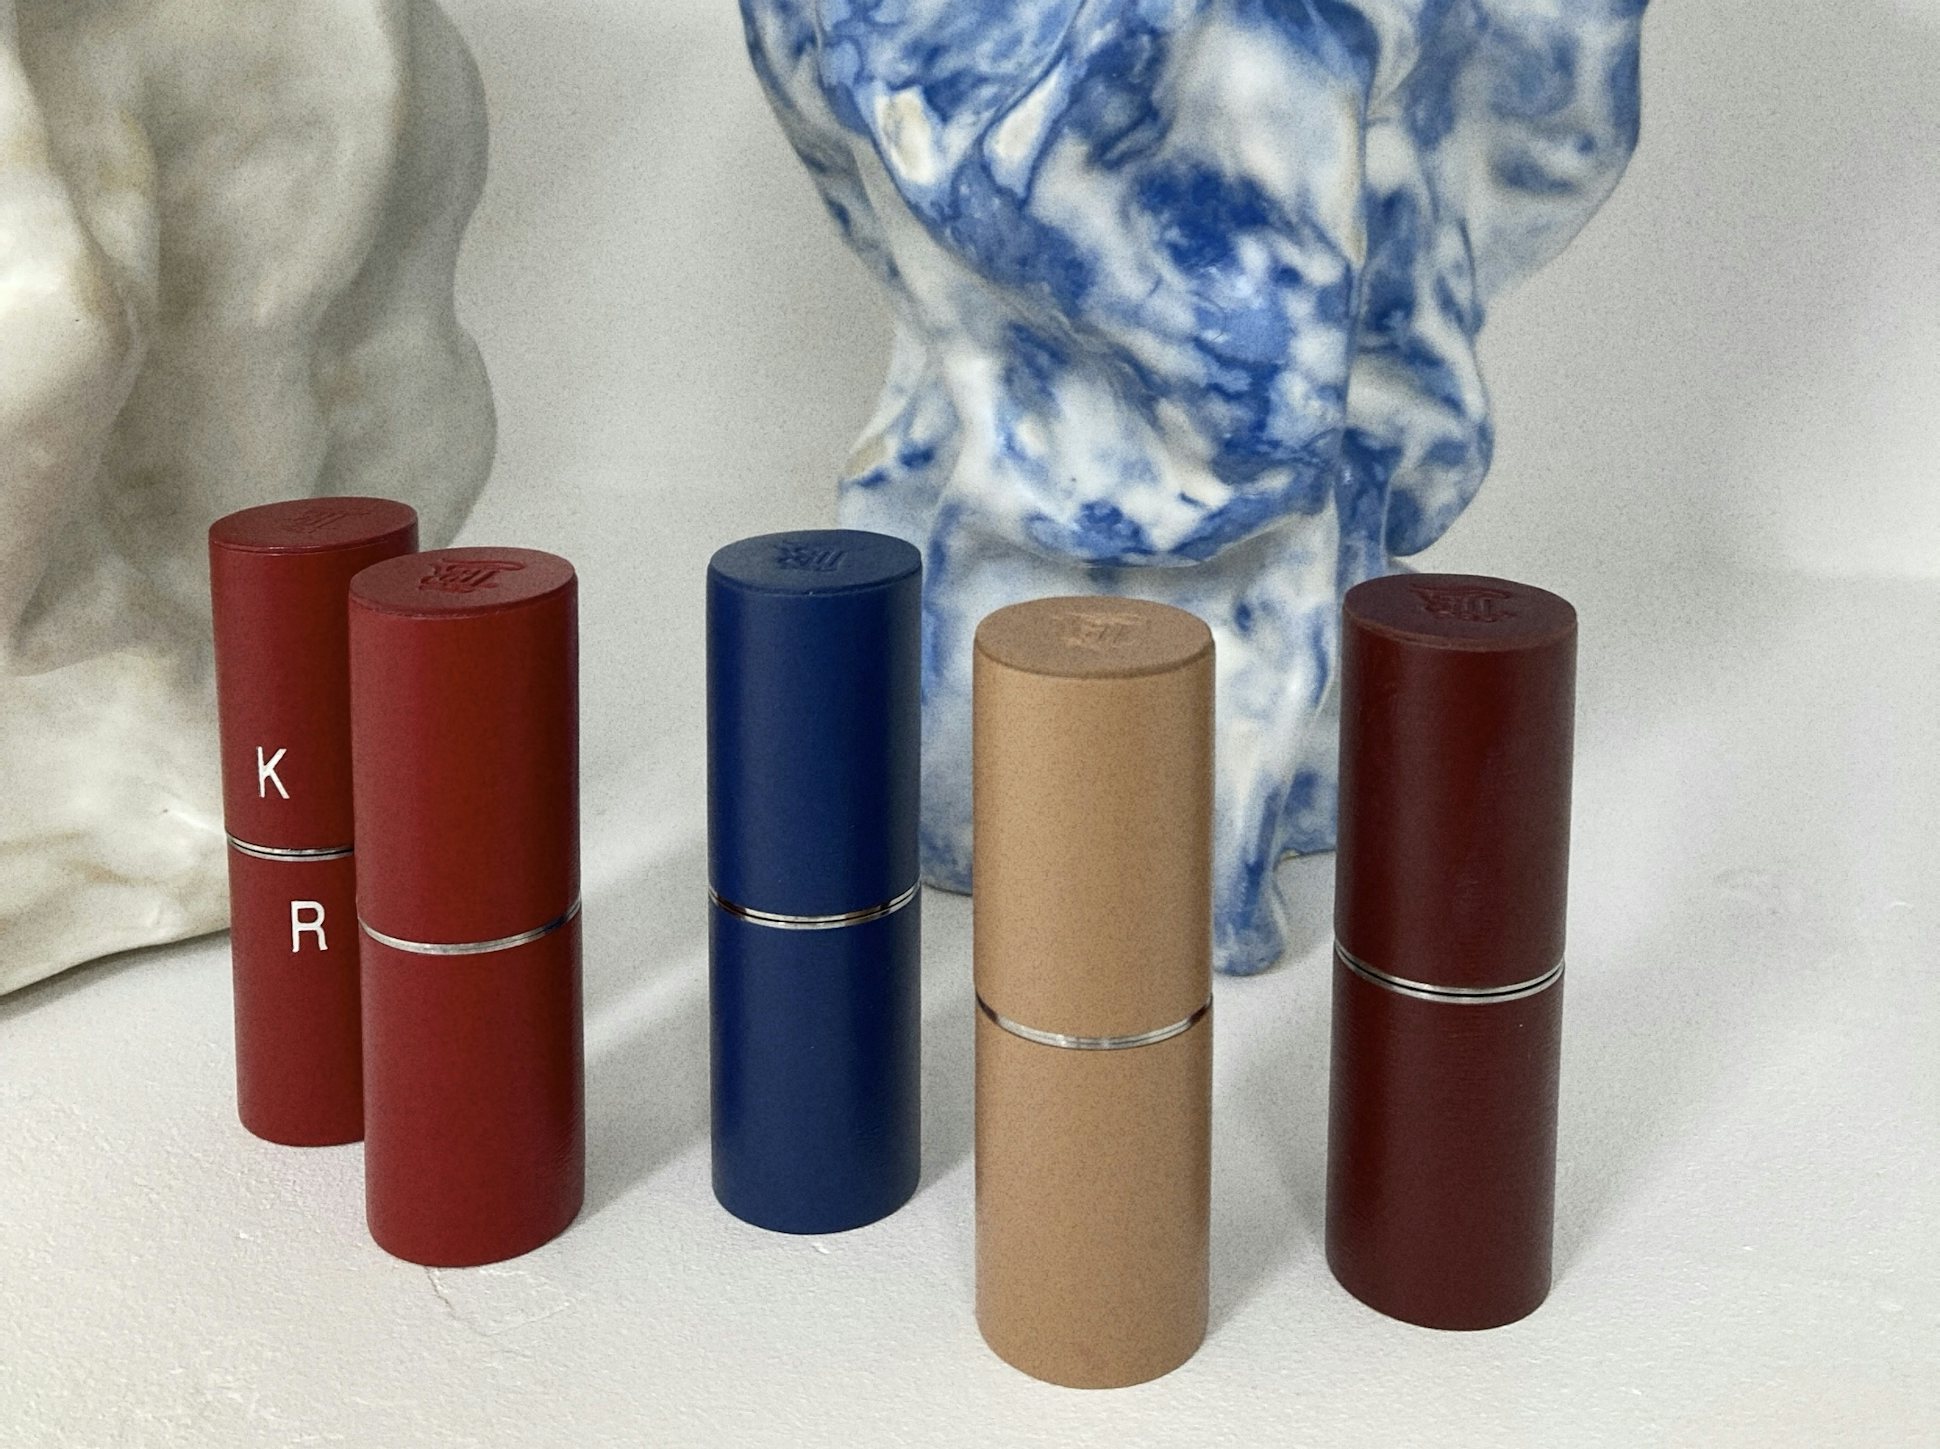 La bouche rouge fine leather lipstick cases lifestyle by Karim Rahman 